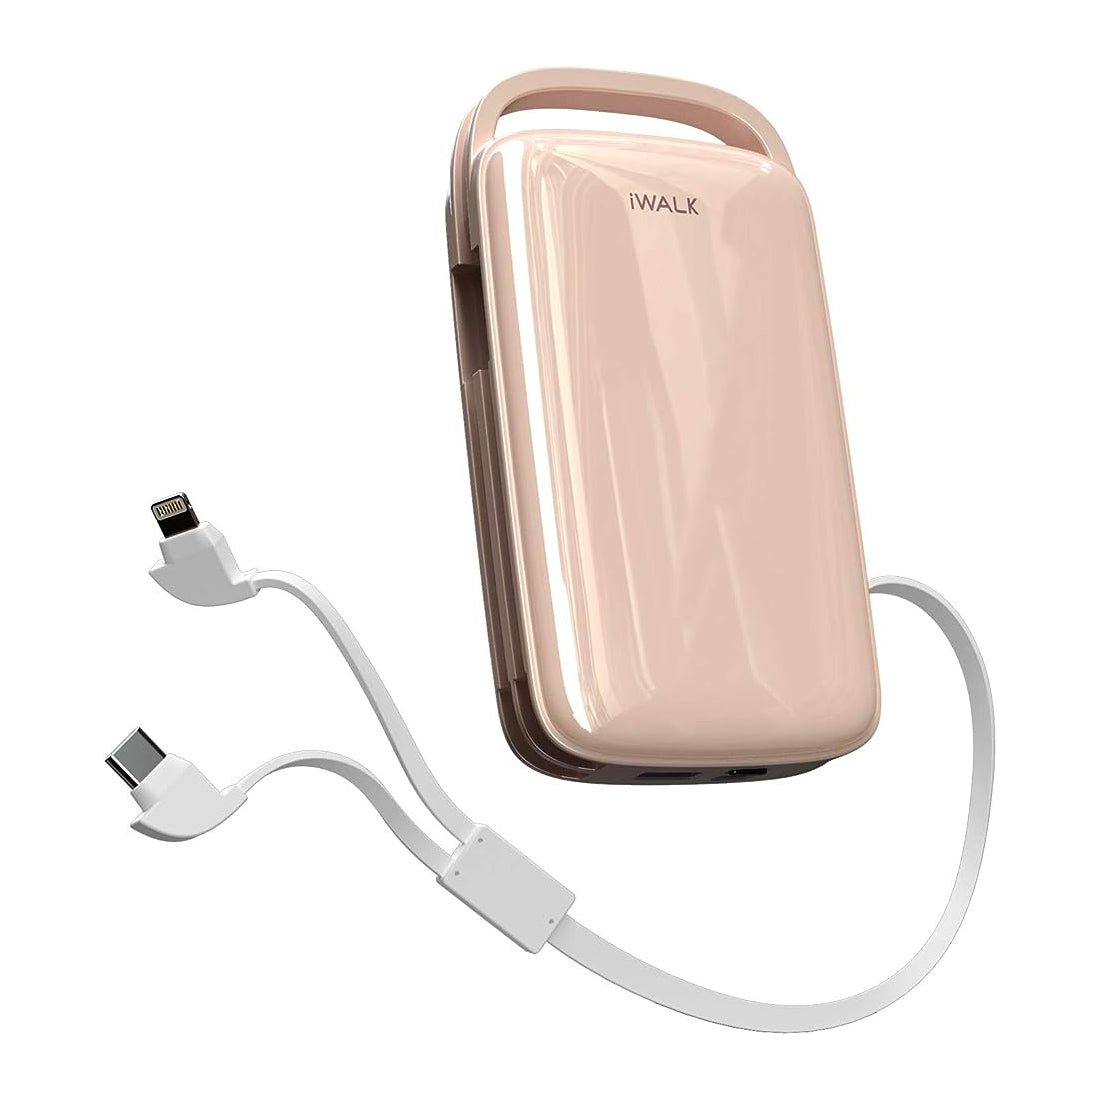 iWalk Portable Charger 20000mah Power Bank - Pink - مزود طاقة – Store 974